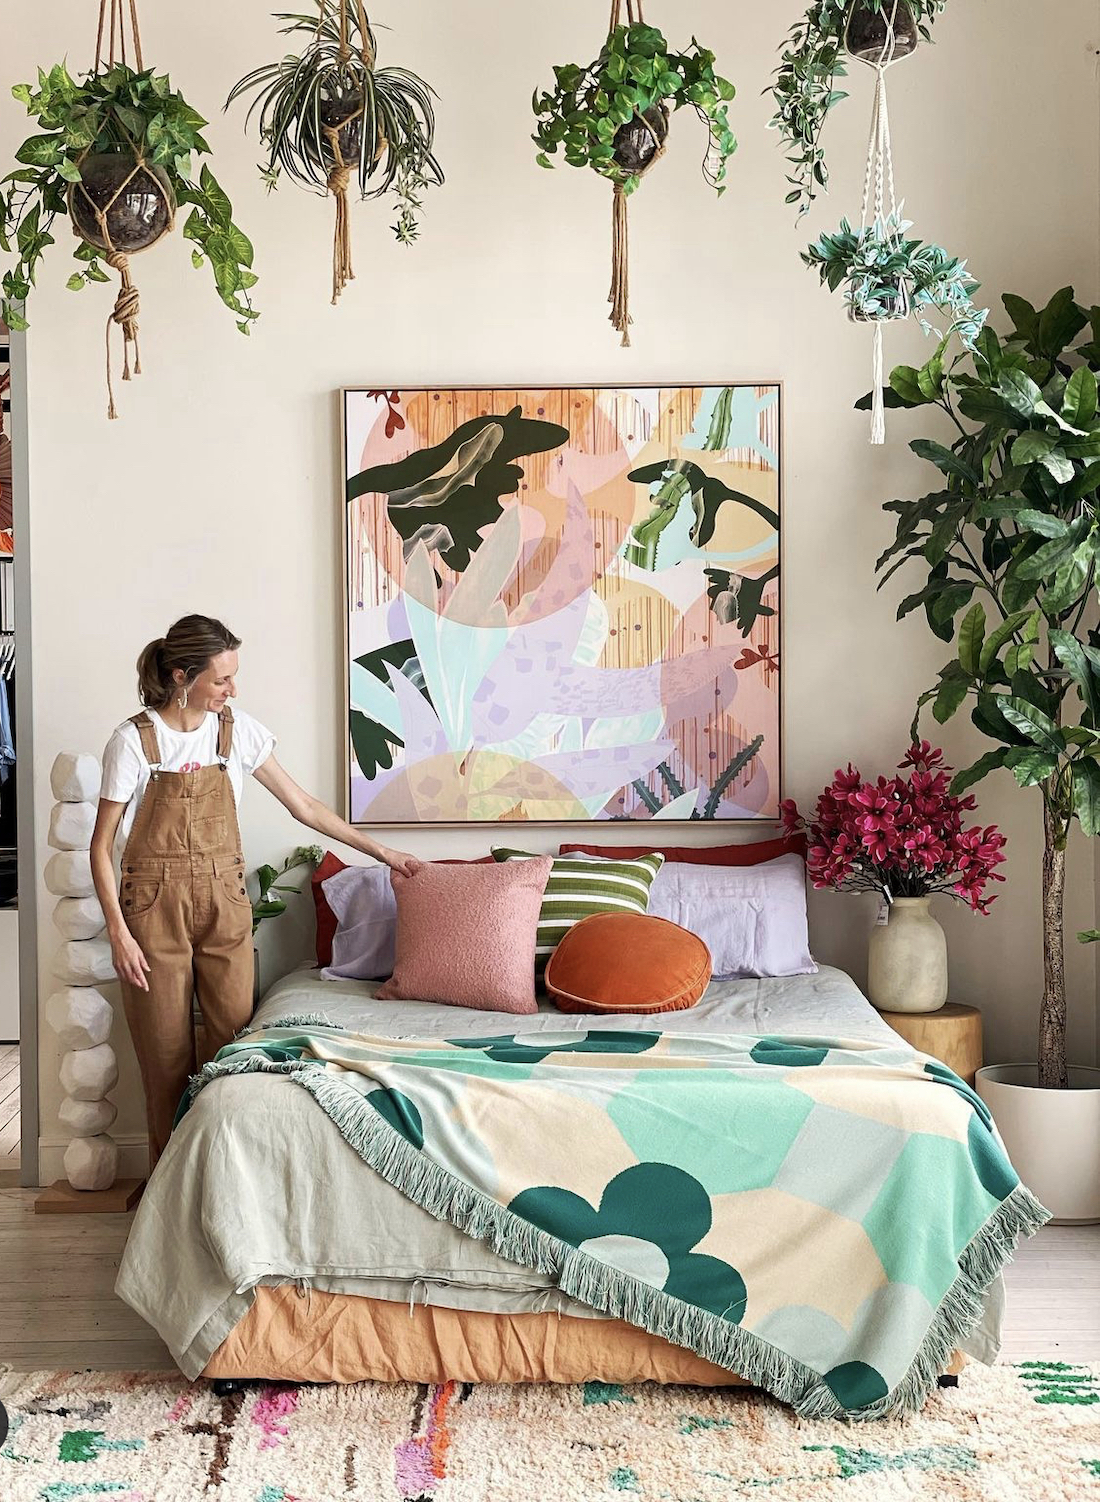 Sarah Leslie artwork in floral bedroom